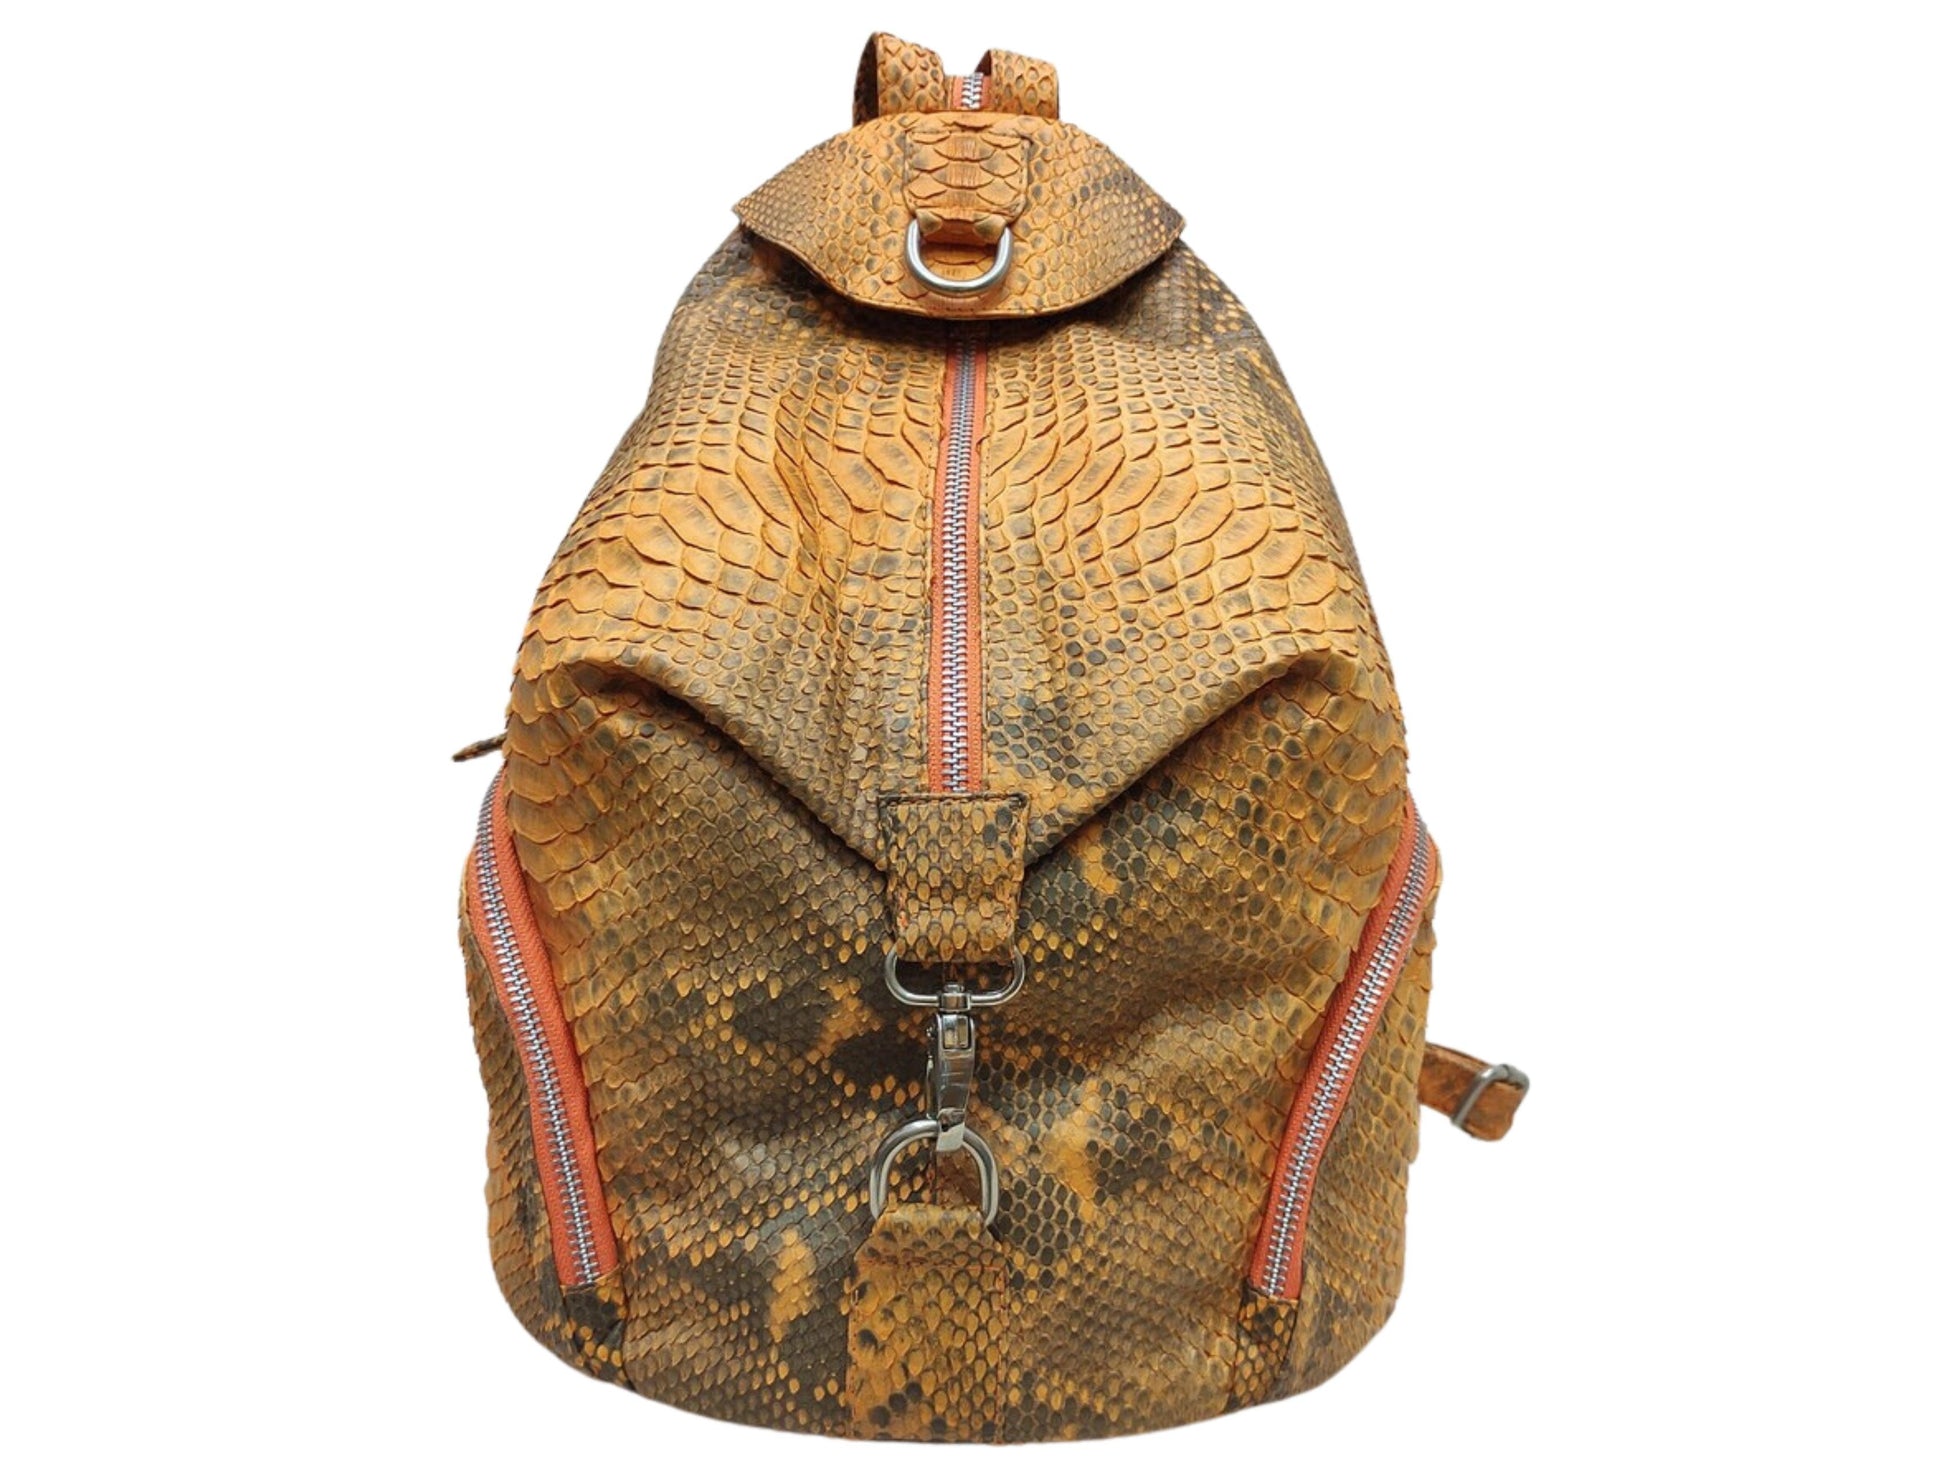 Backpacks Handmade Snakeskin Backpack, Python Travel Bag, School Backpack, Unique Gift Brown Python Jacket by LFM Fashion